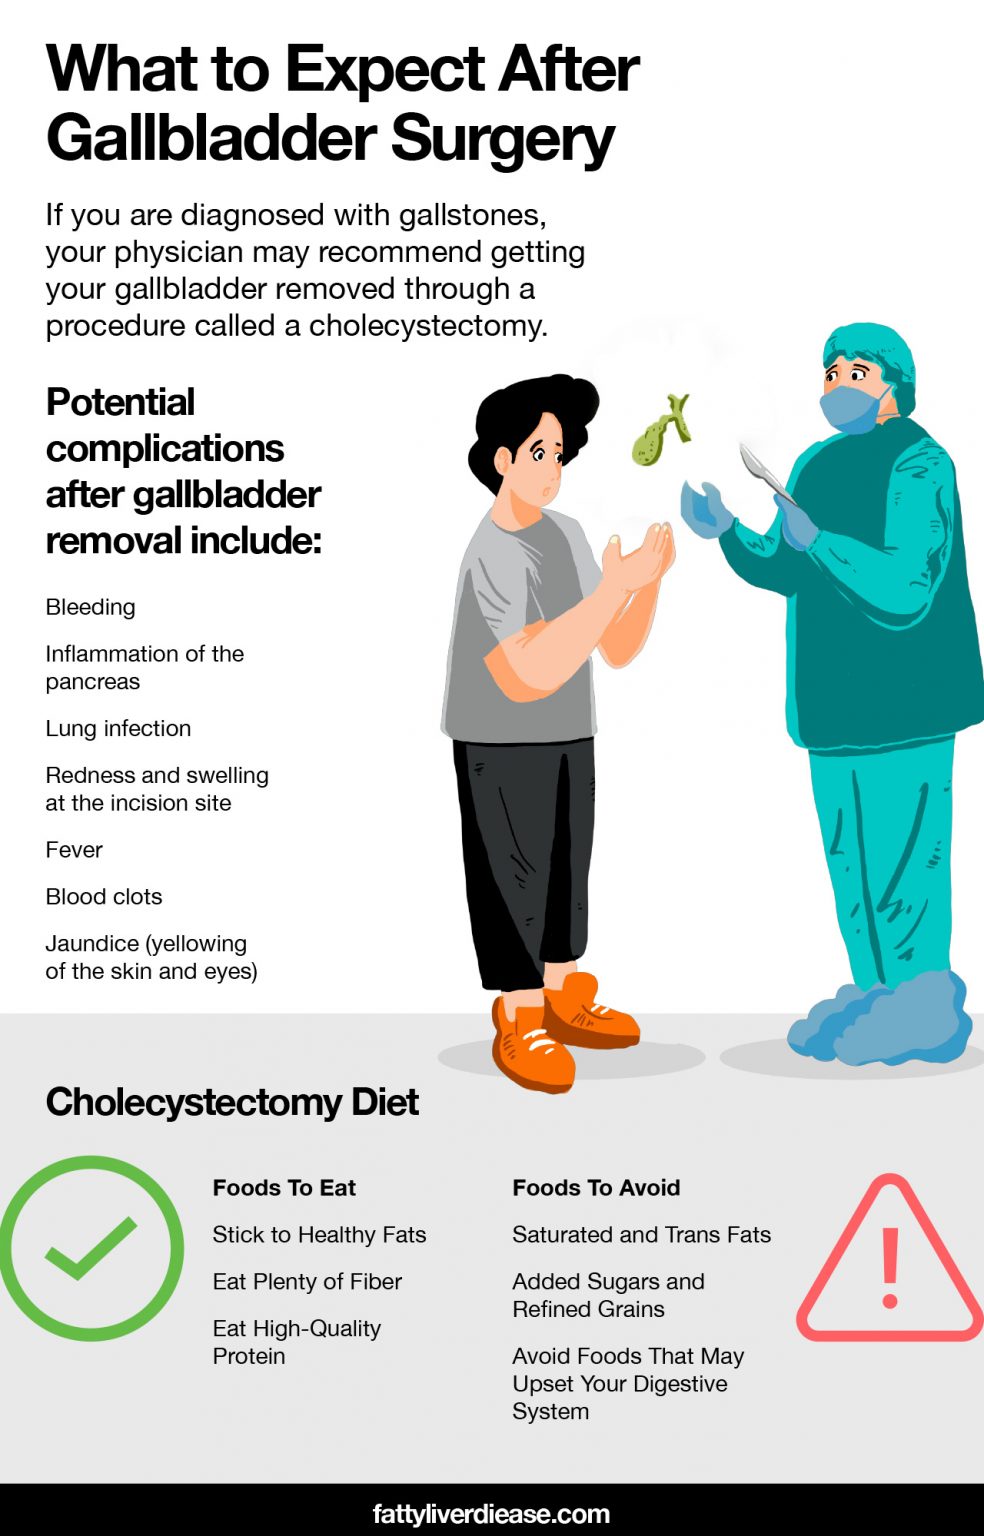 The Cholecystectomy Diet | FattyLiverDisease